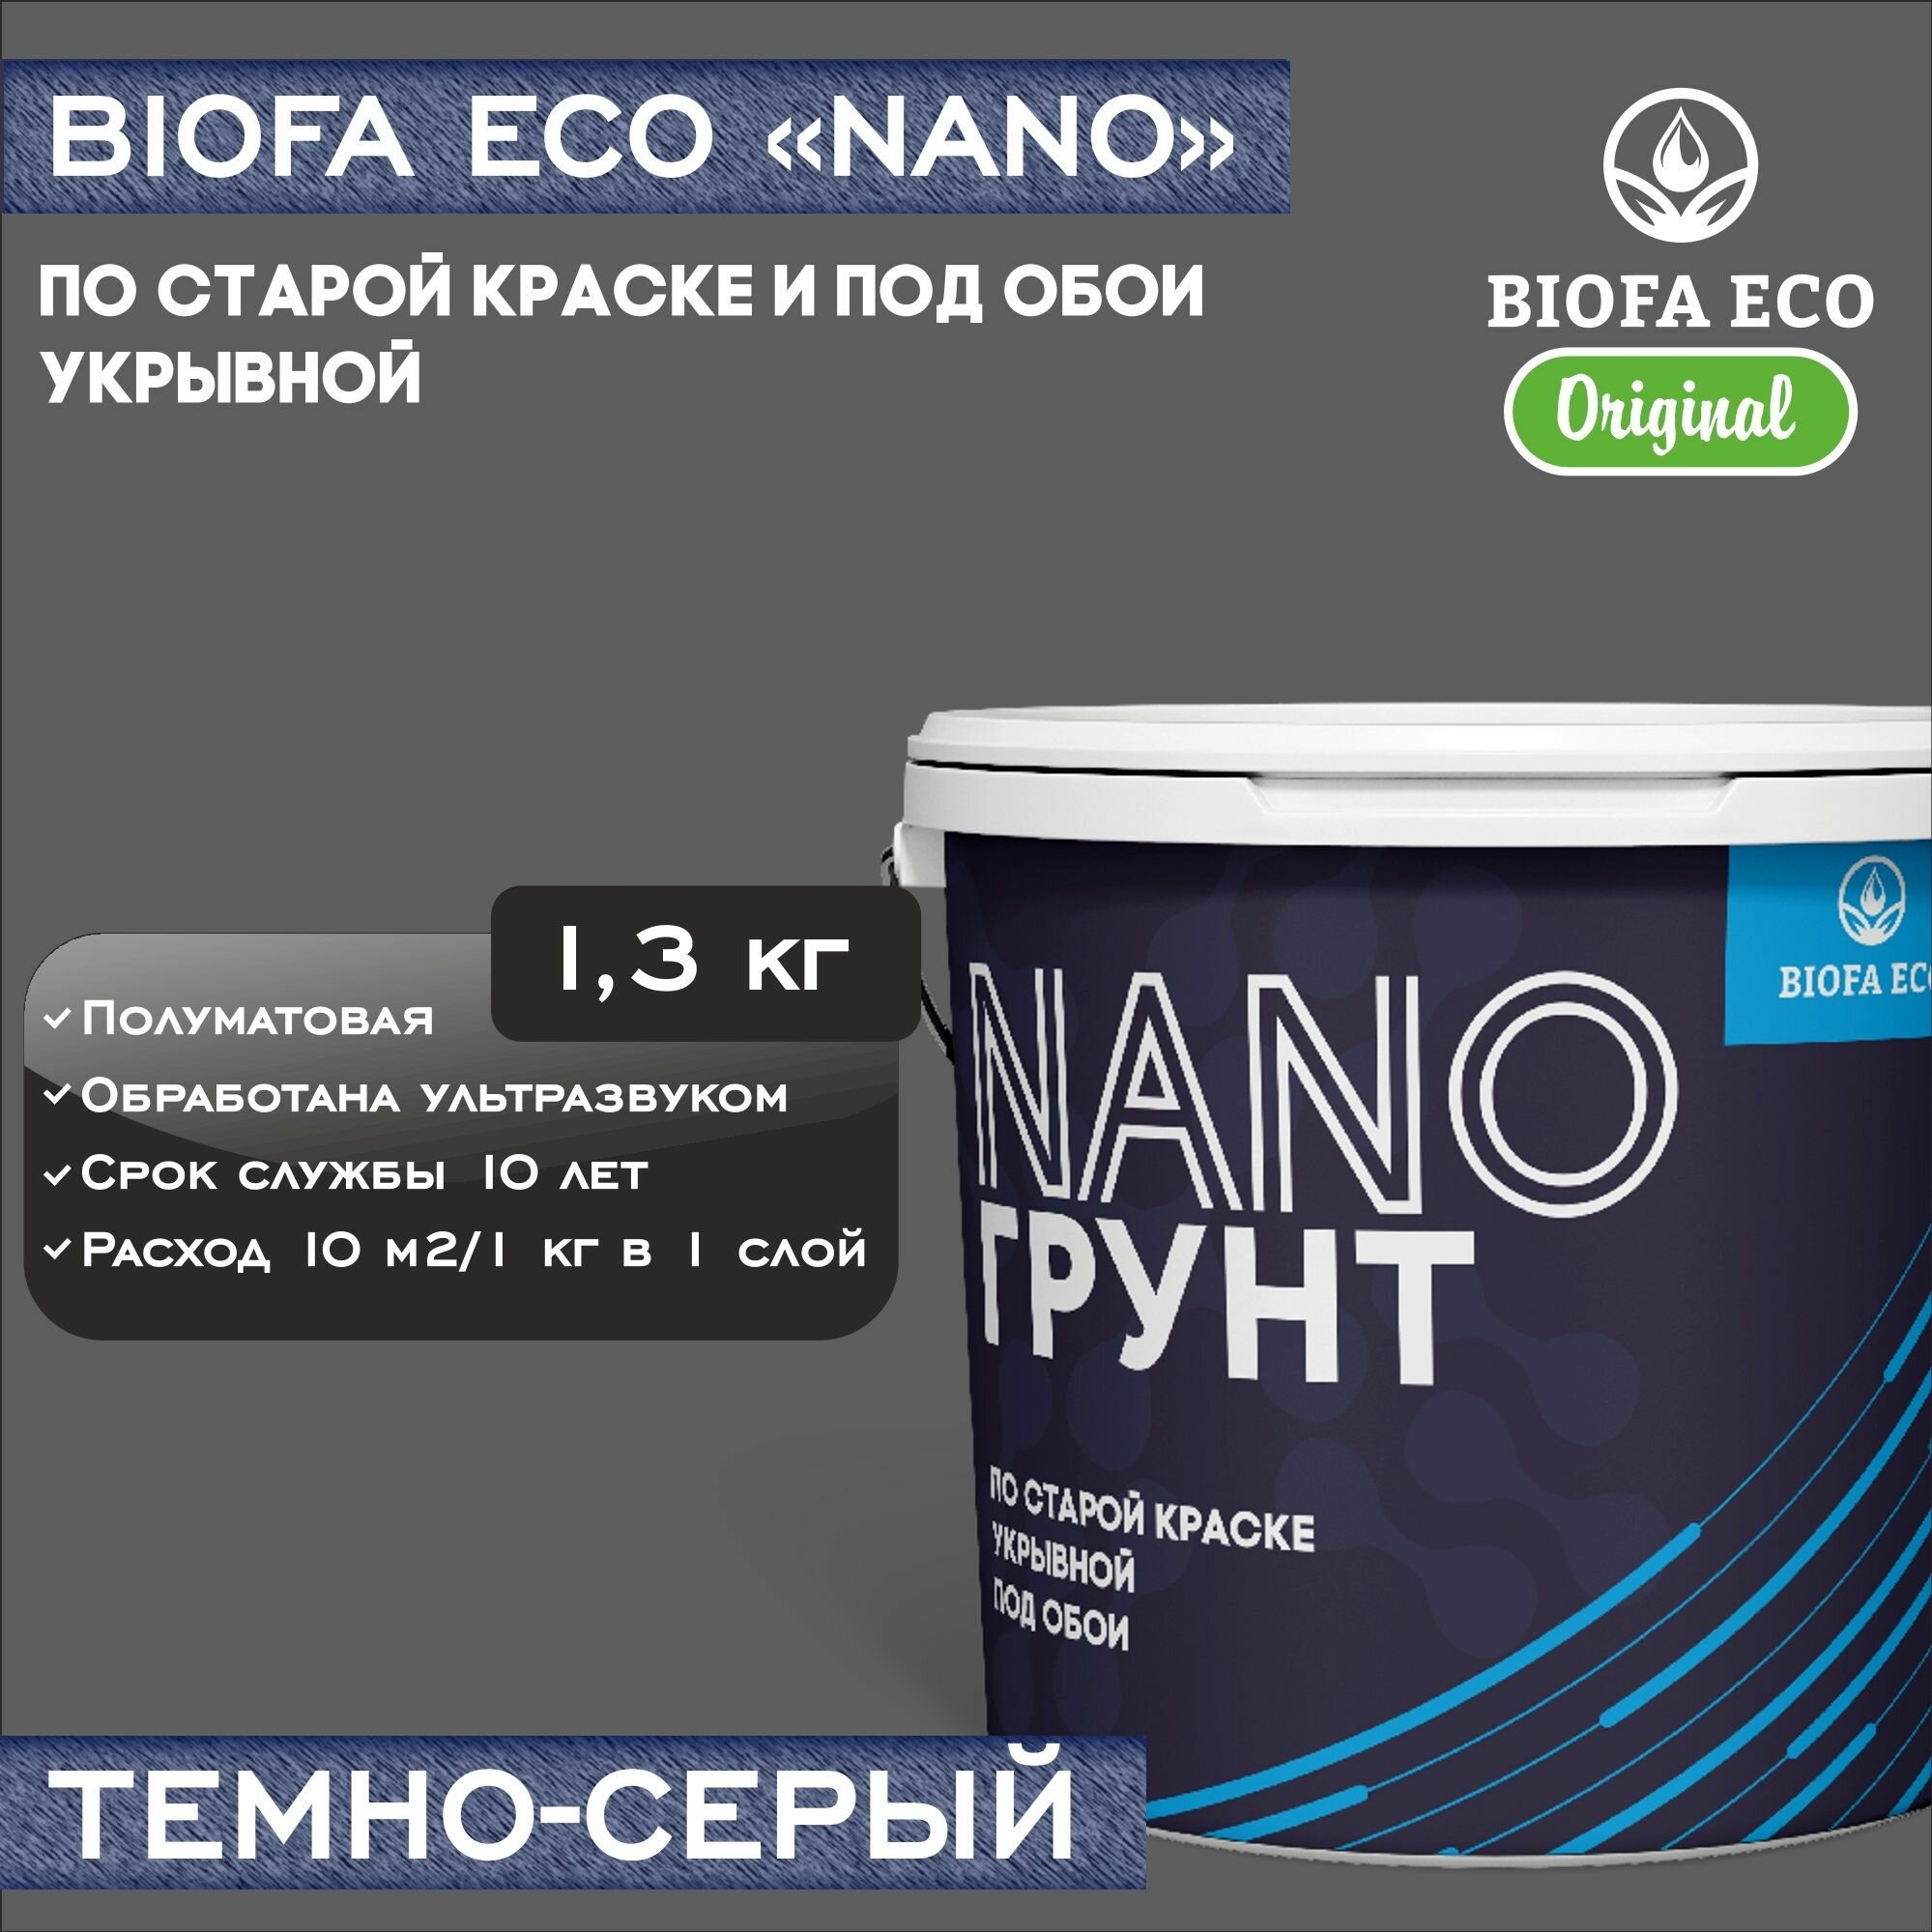 Грунт BIOFA ECO NANO укрывной под обои и по старой краске, адгезионный, цвет темно-серый, 1,3 кг